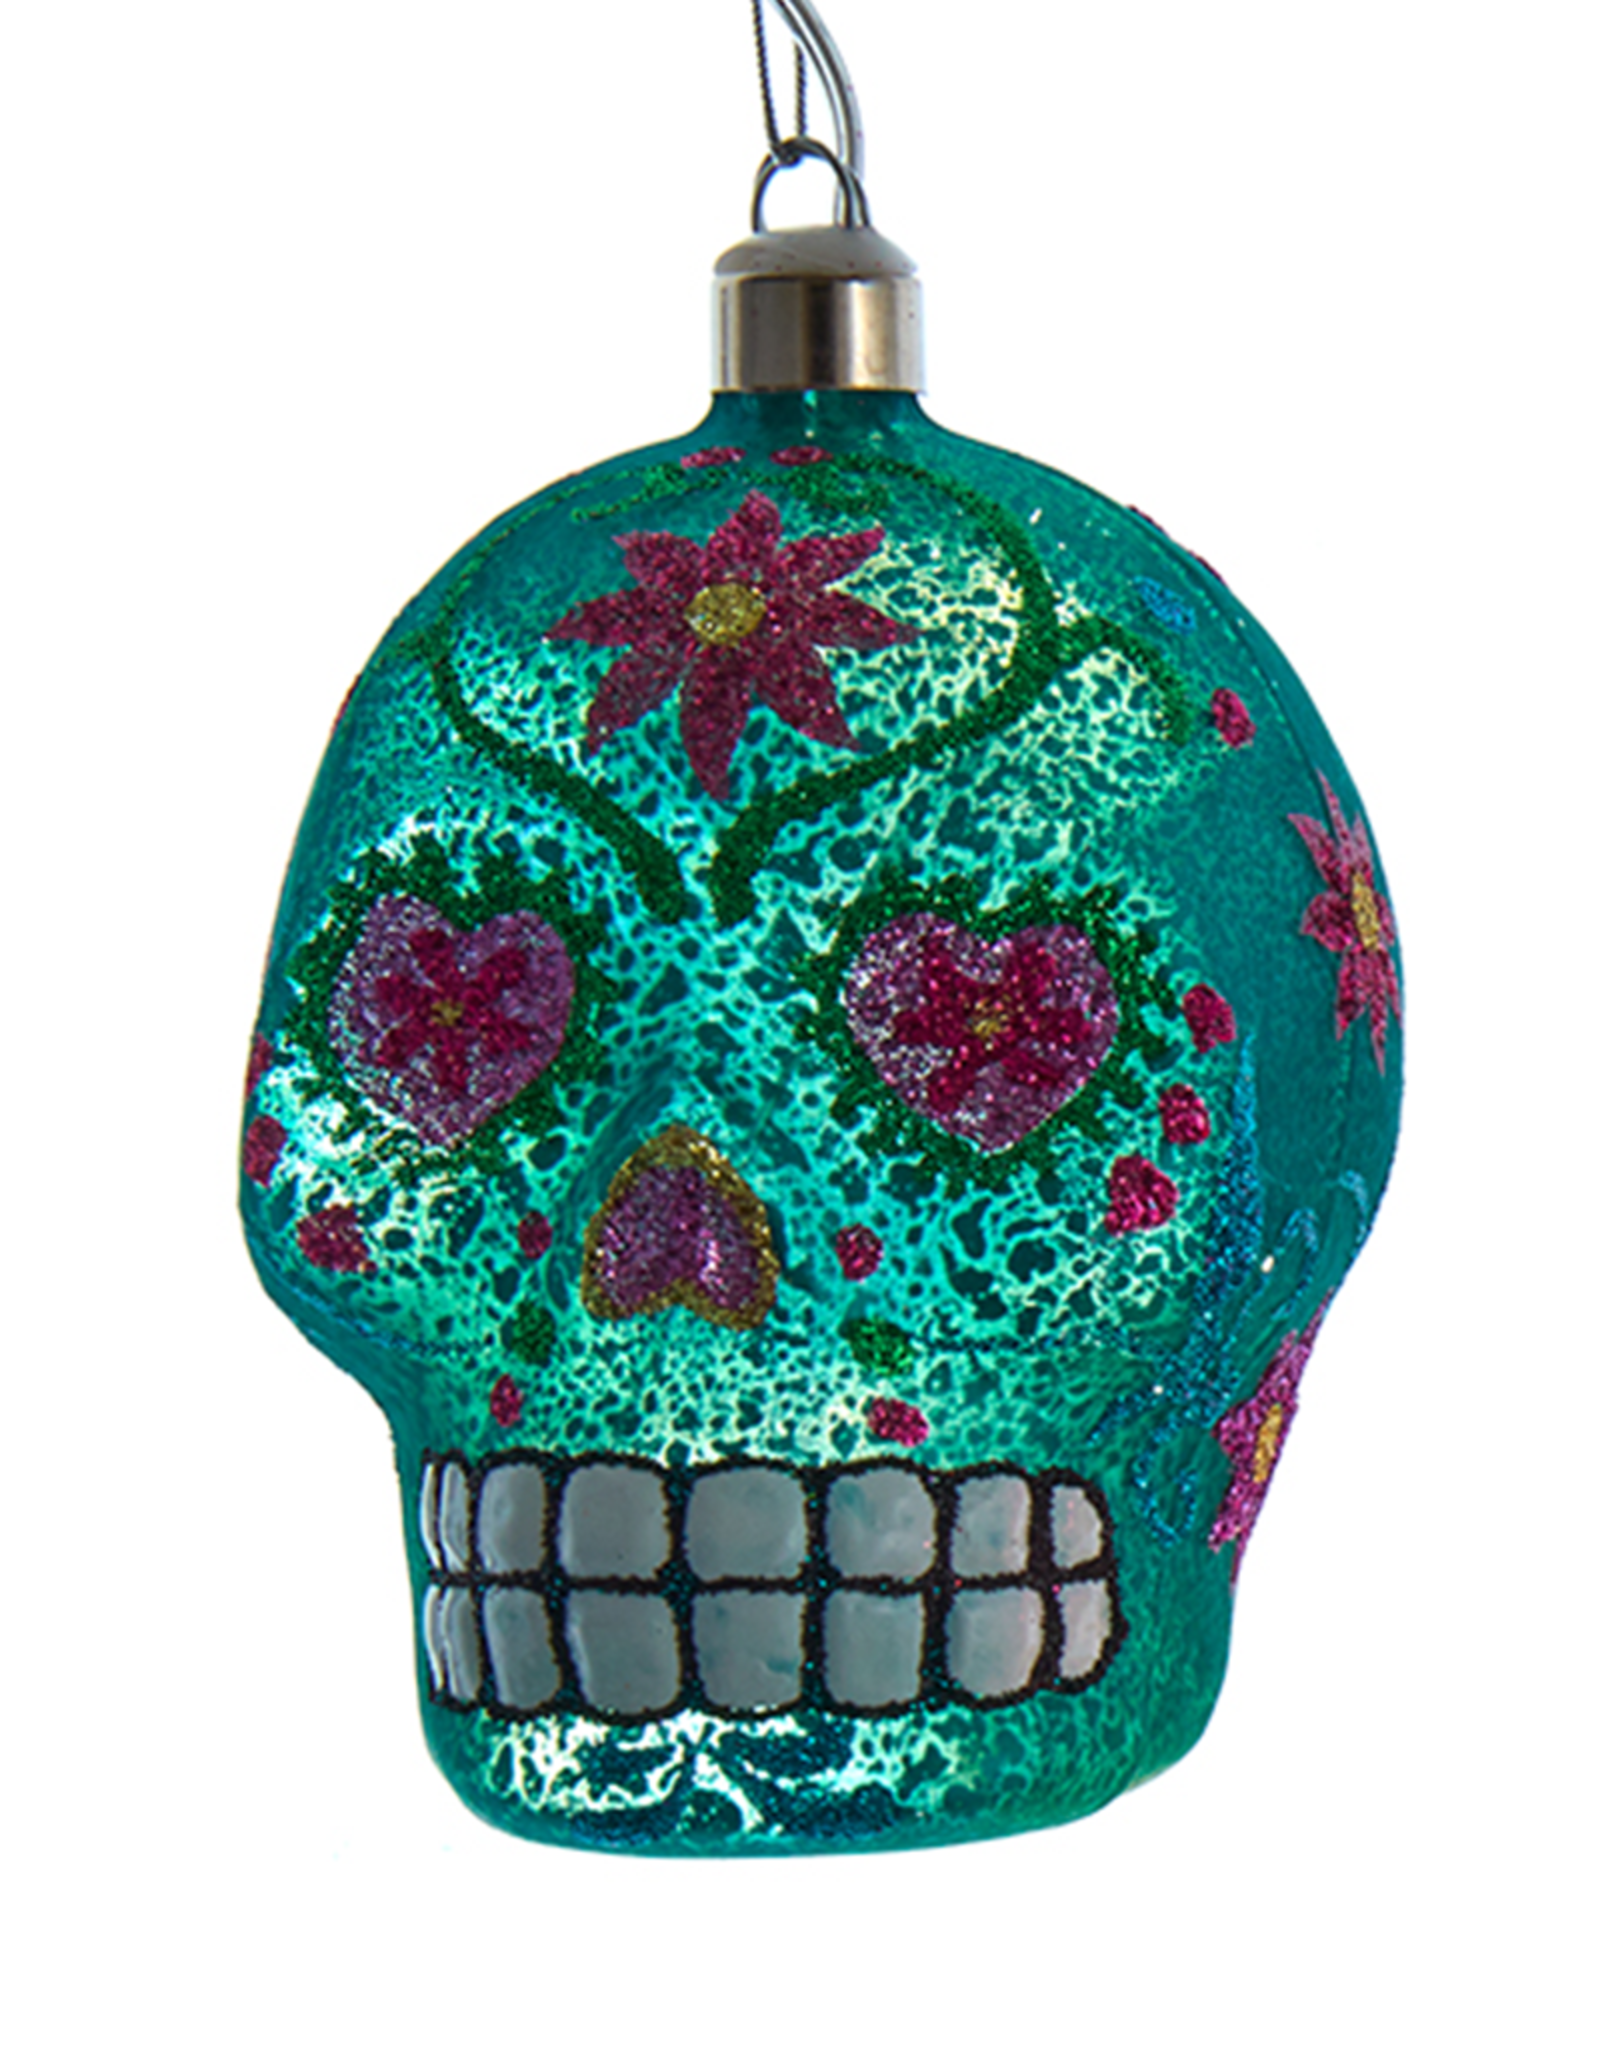 Kurt Adler Illuminated Gems USB LED Day Of The Dead Skull Ornament G